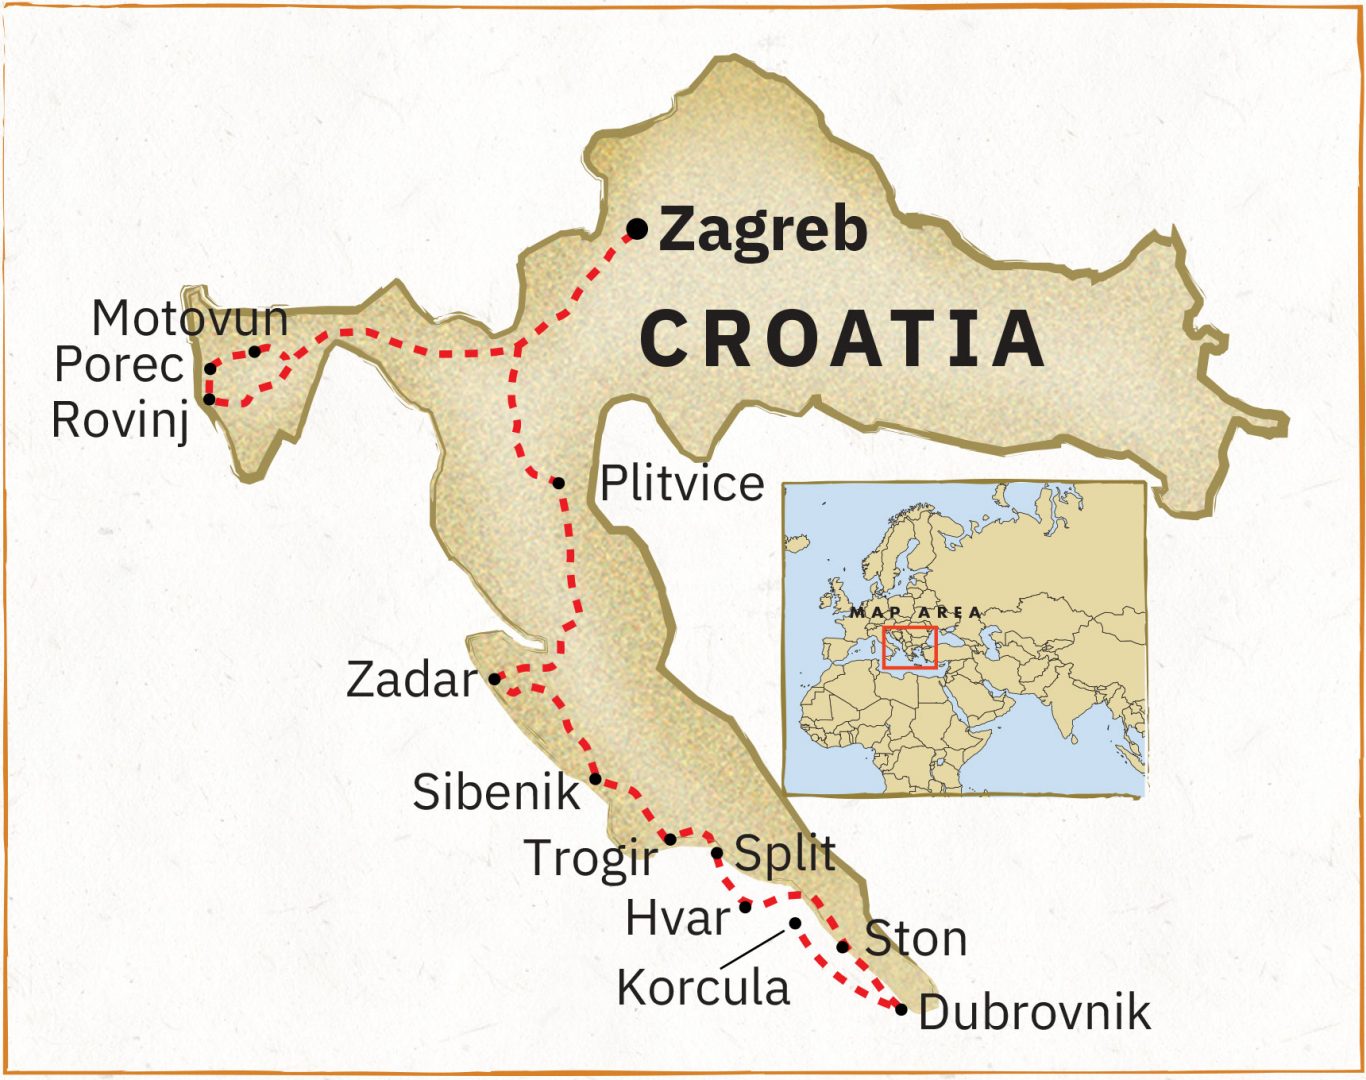 ECROA21 Croatia 1366x1080 